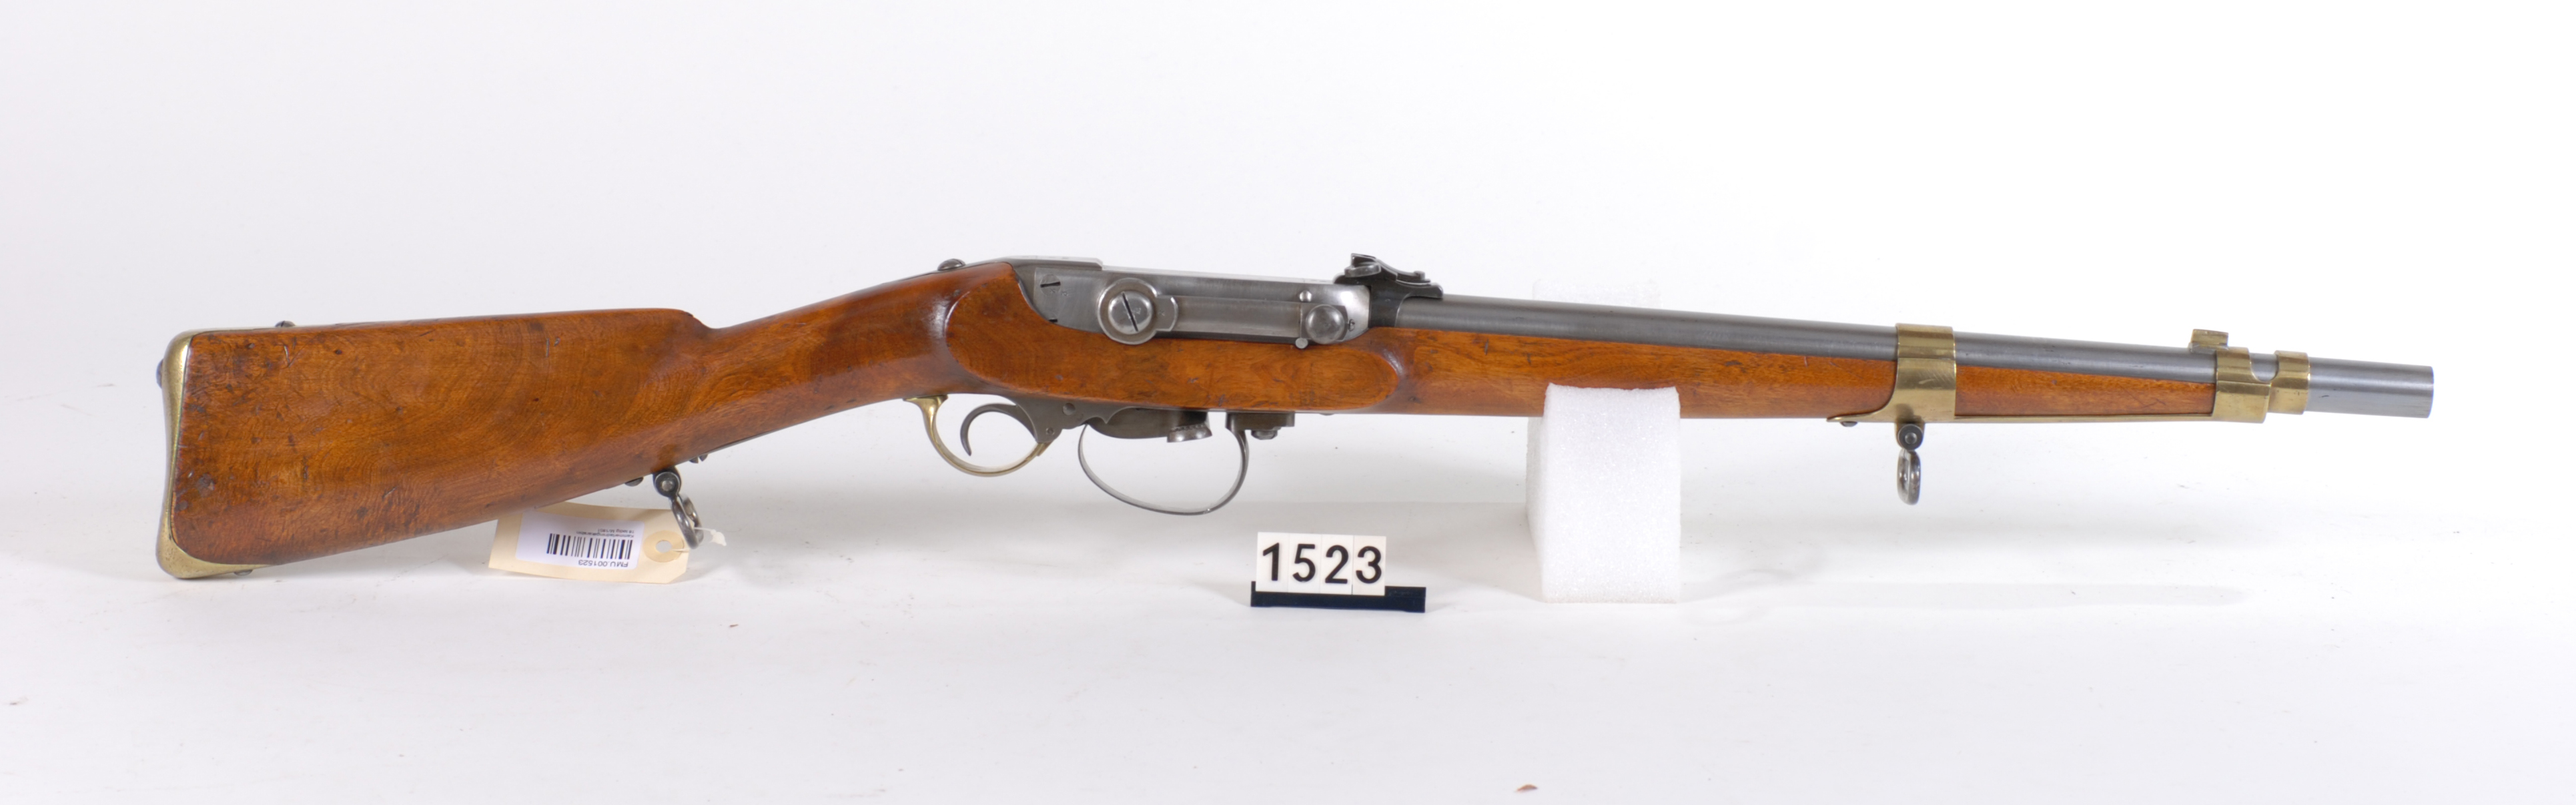 Rifle-Kongsberg-Kammerlader-M1851-3-1.jpg